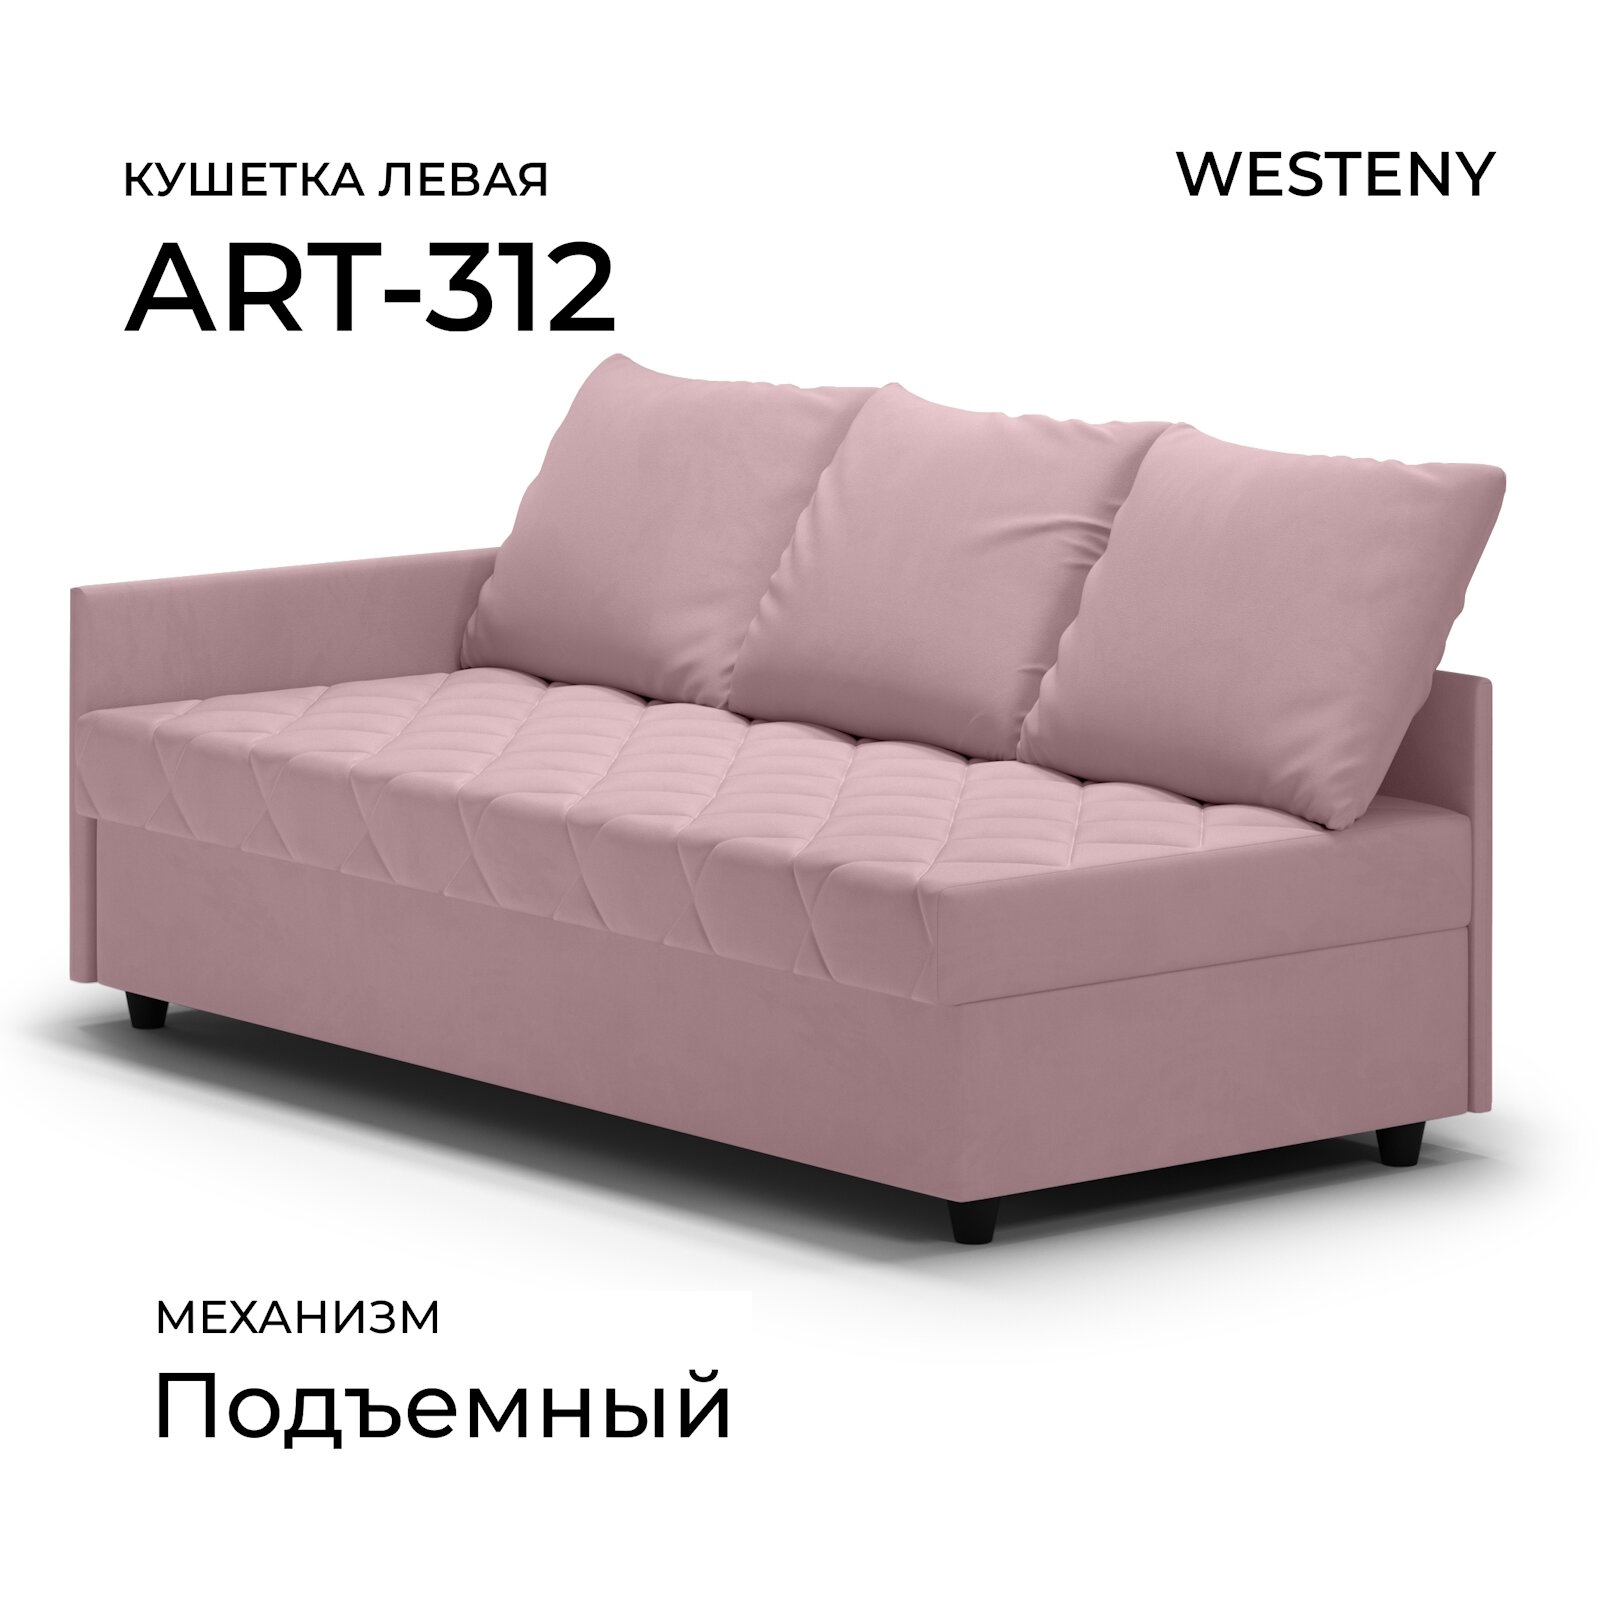 Кушетка односпальная ART-312 левая розовая